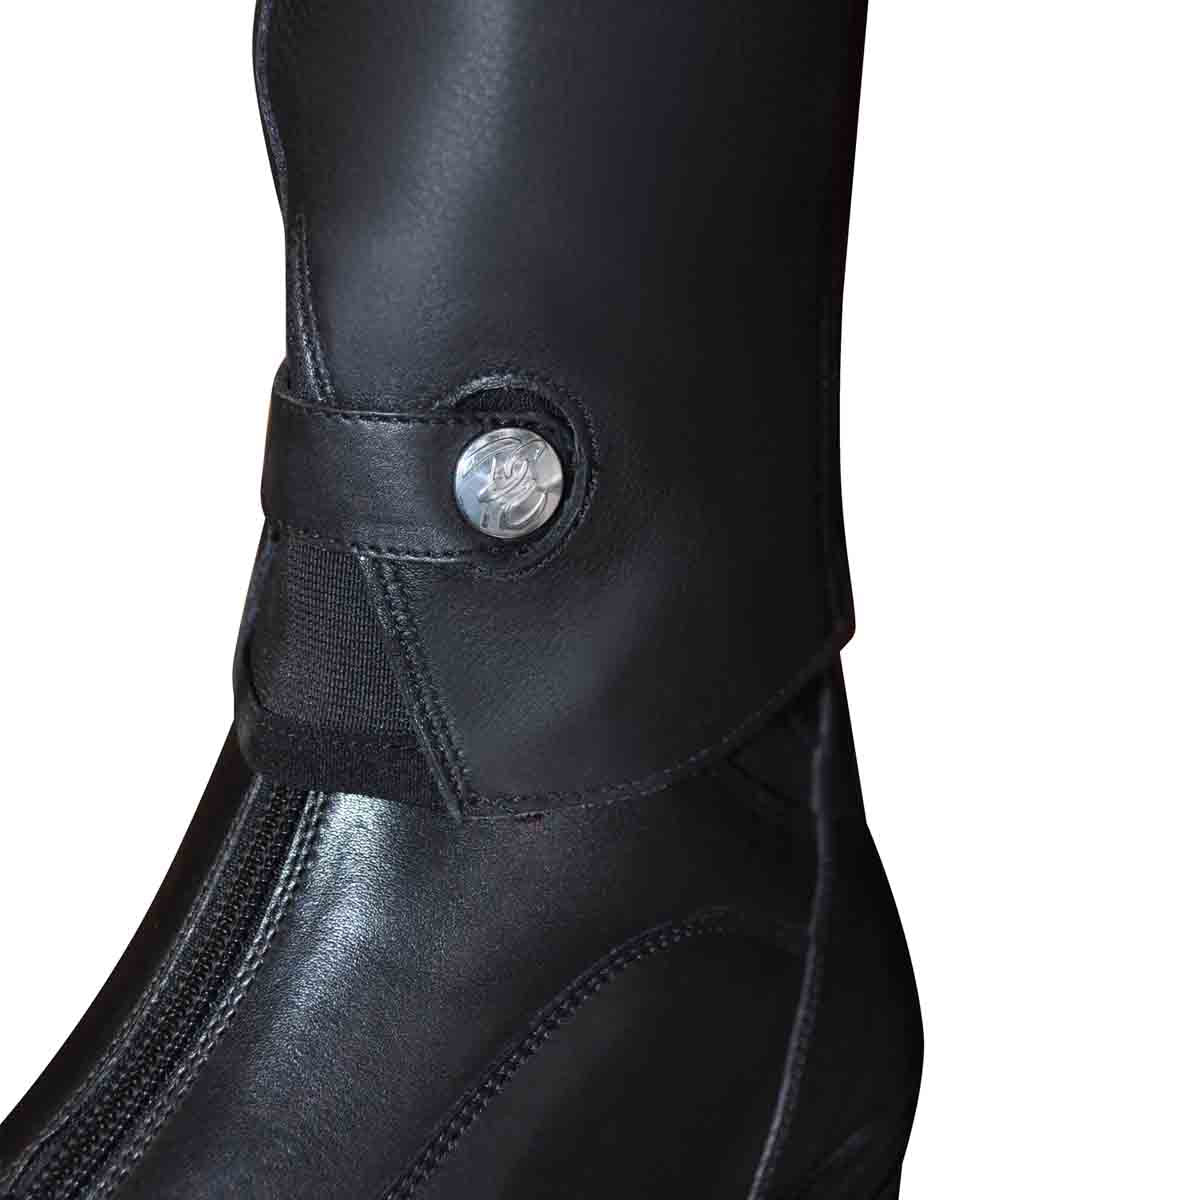 Détail de l'attache de la mini-chaps avec la boots Privilège Equitation Nola noires